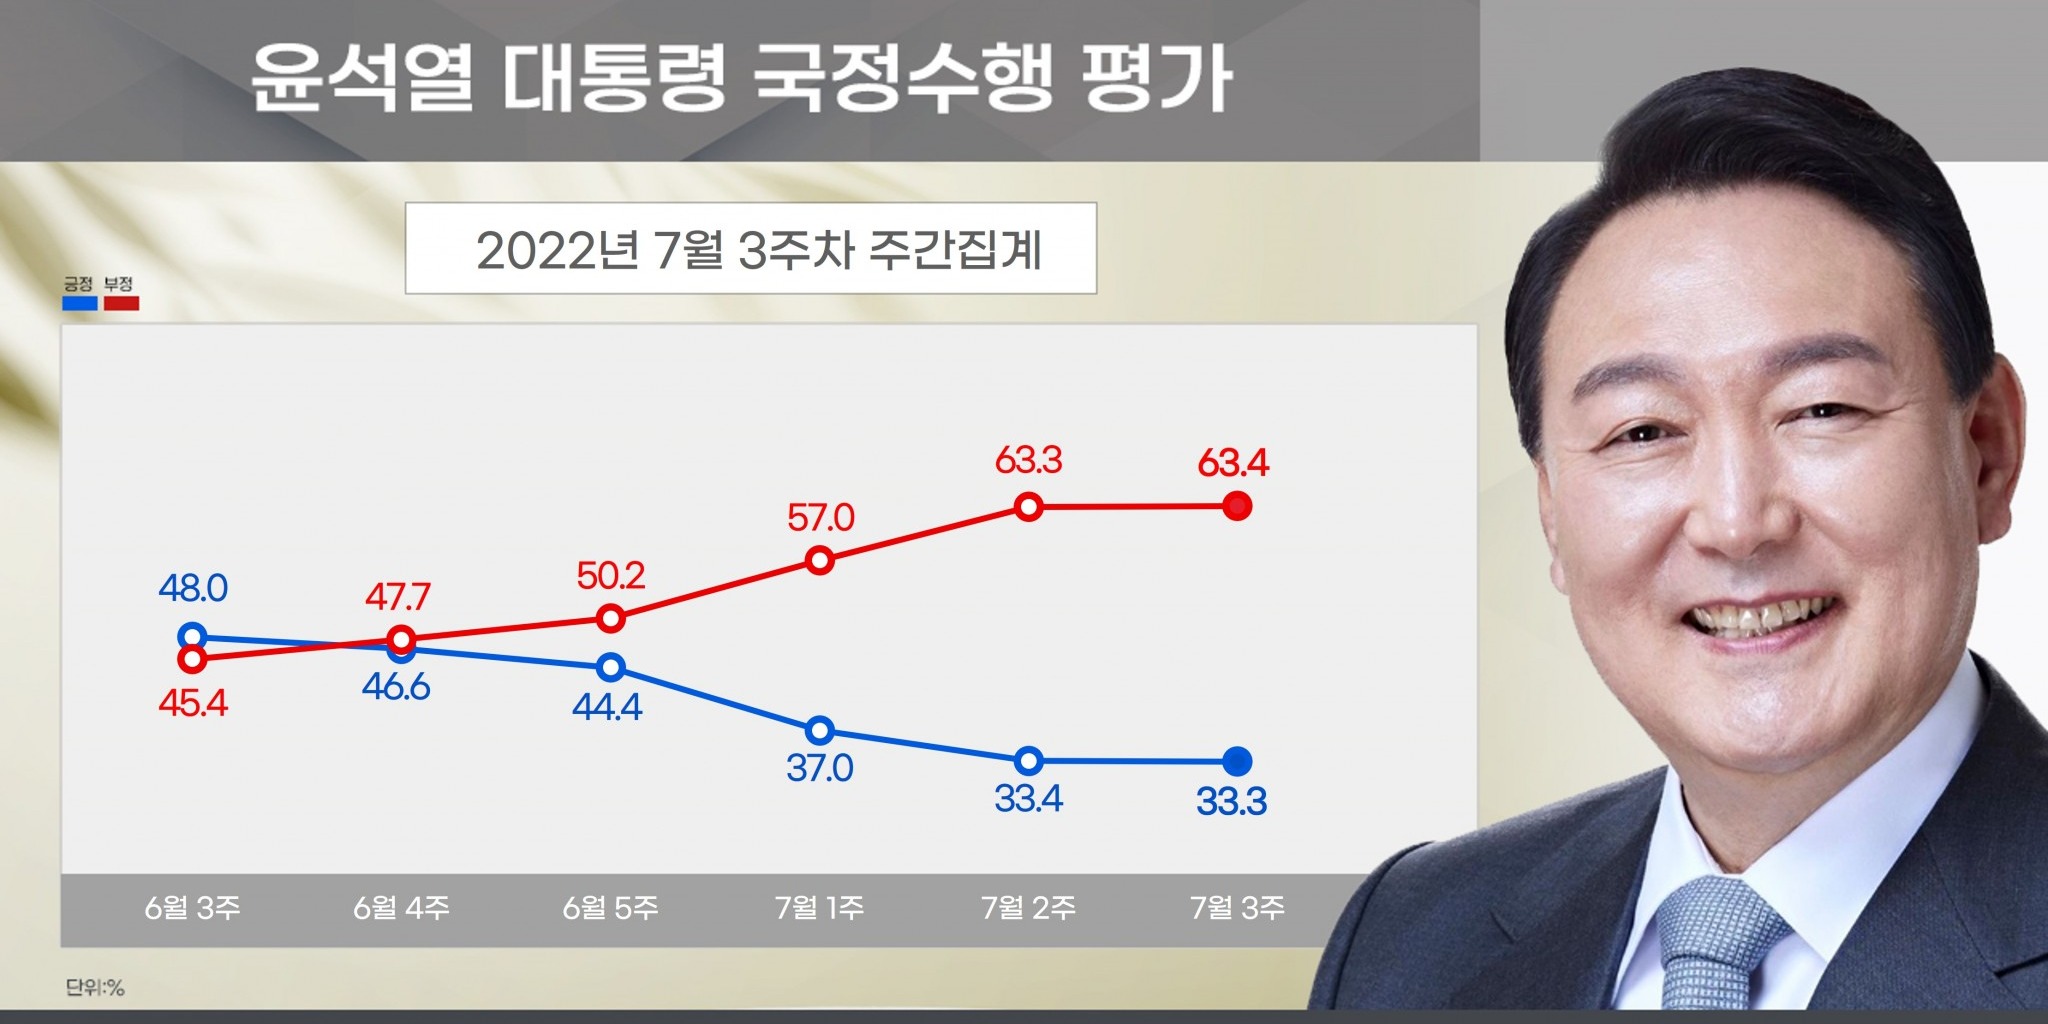 [리얼미터] 윤석열 지지율 바닥 근접했나, 긍정 33.3%, 부정 63.4%